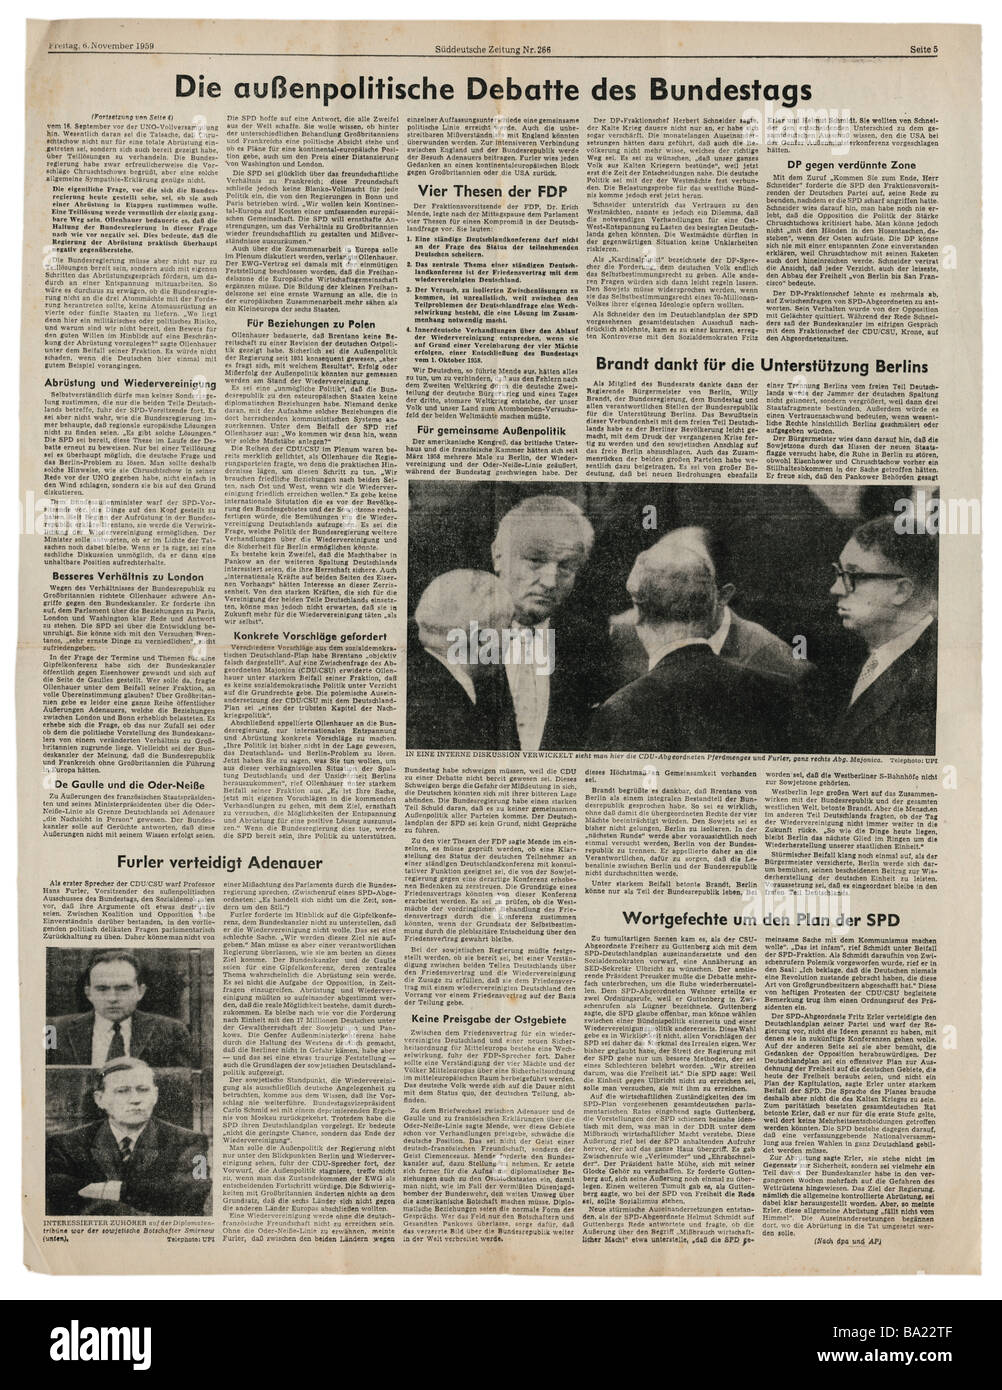 press/media, magazines, 'Süddeutsche Zeitung', Munich, 15 volume, number 266, Friday 6.11.1959, article, debate at Bundestag on foreign policy, Stock Photo